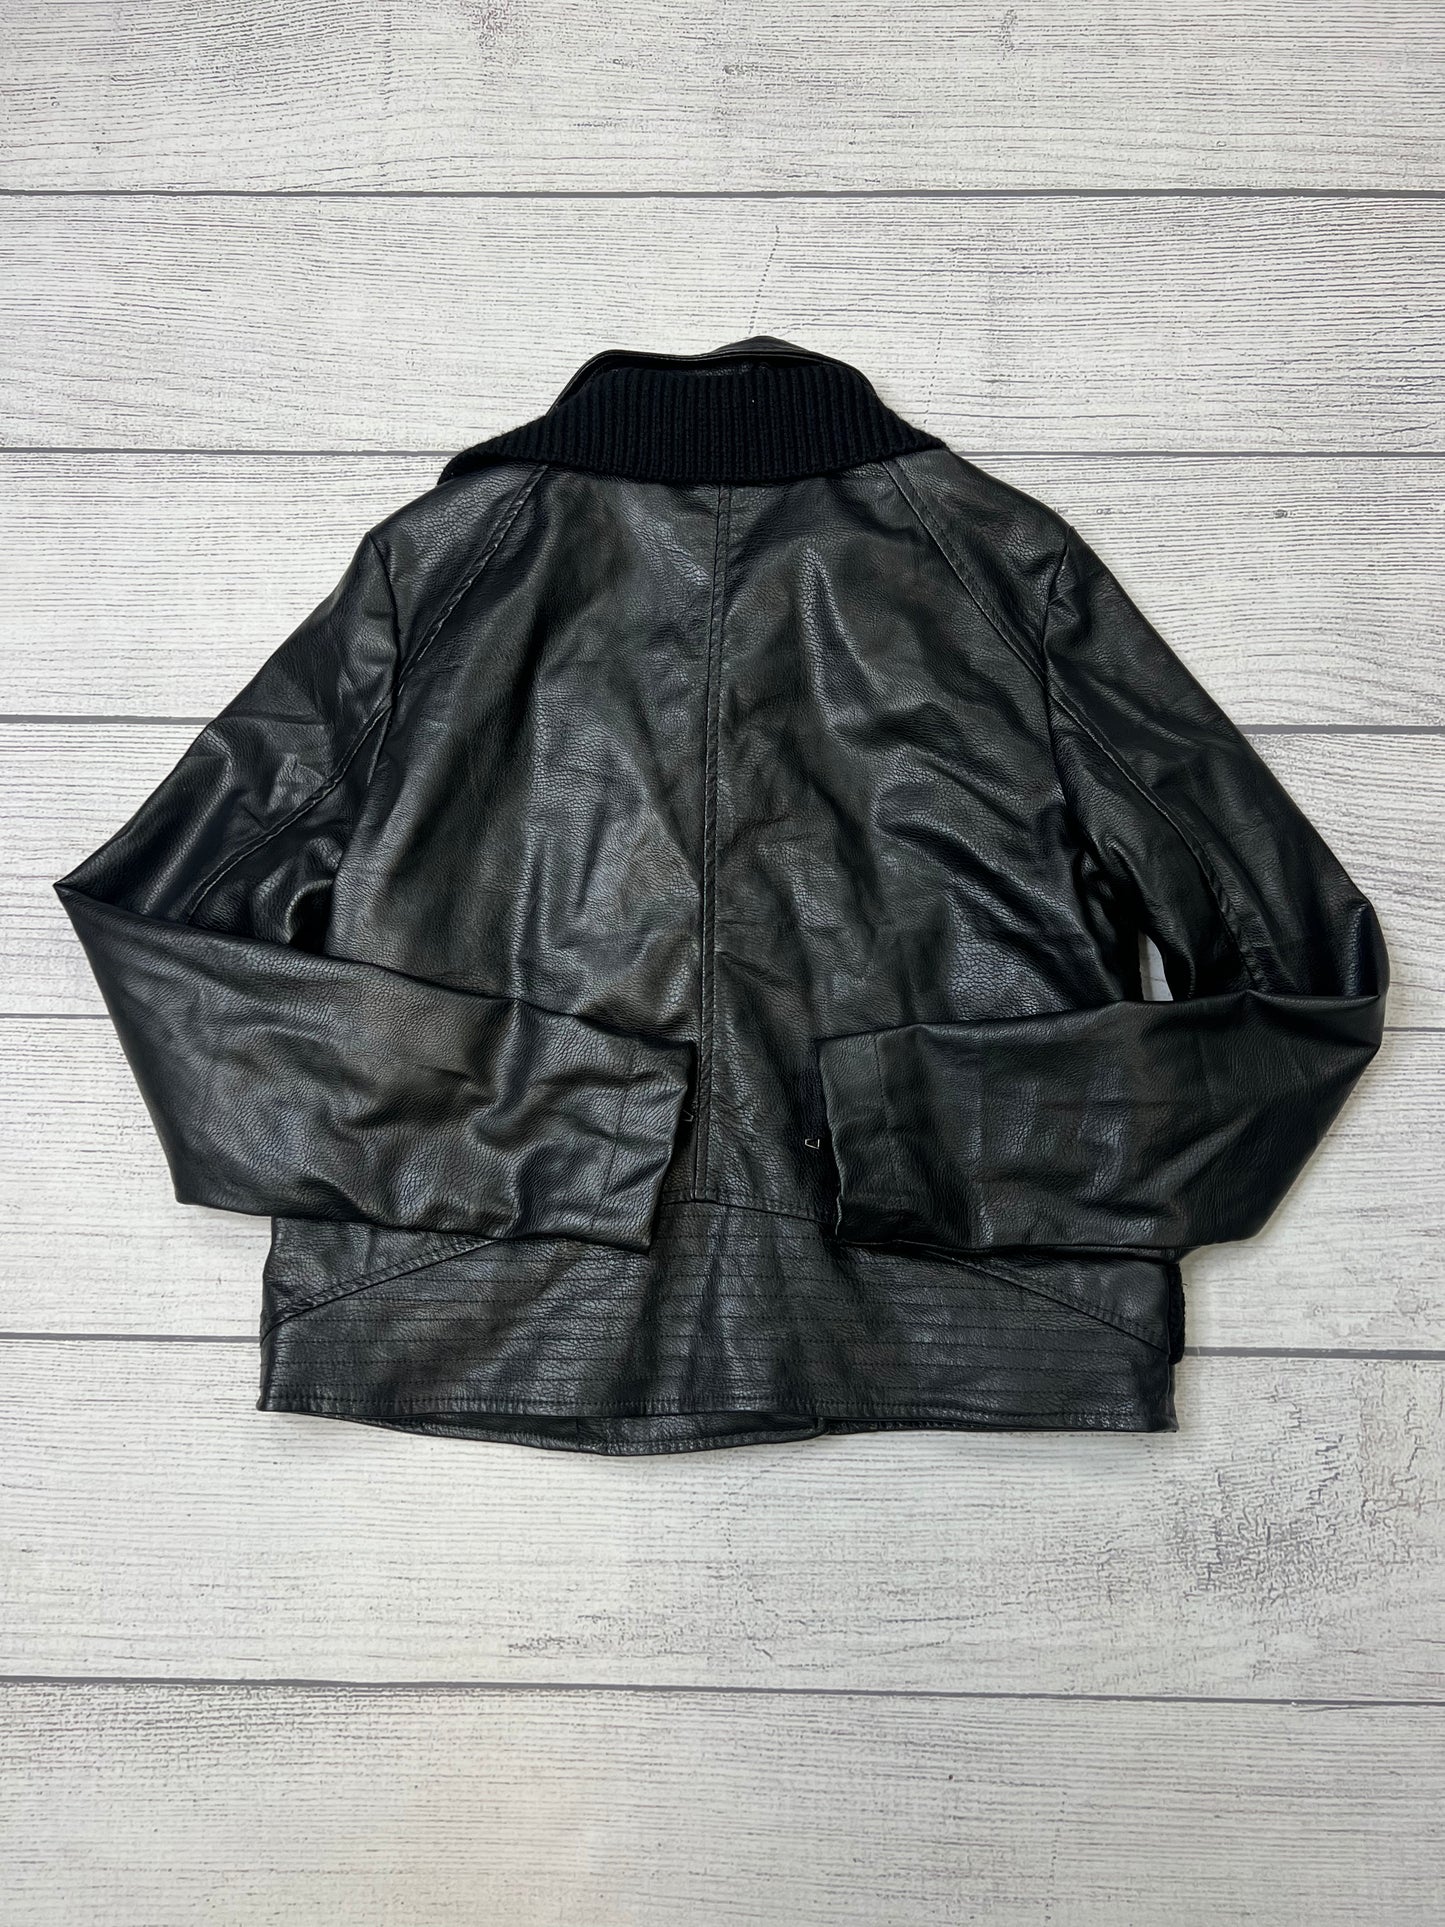 New! Jacket / Blazer By Anthropologie  Size: M